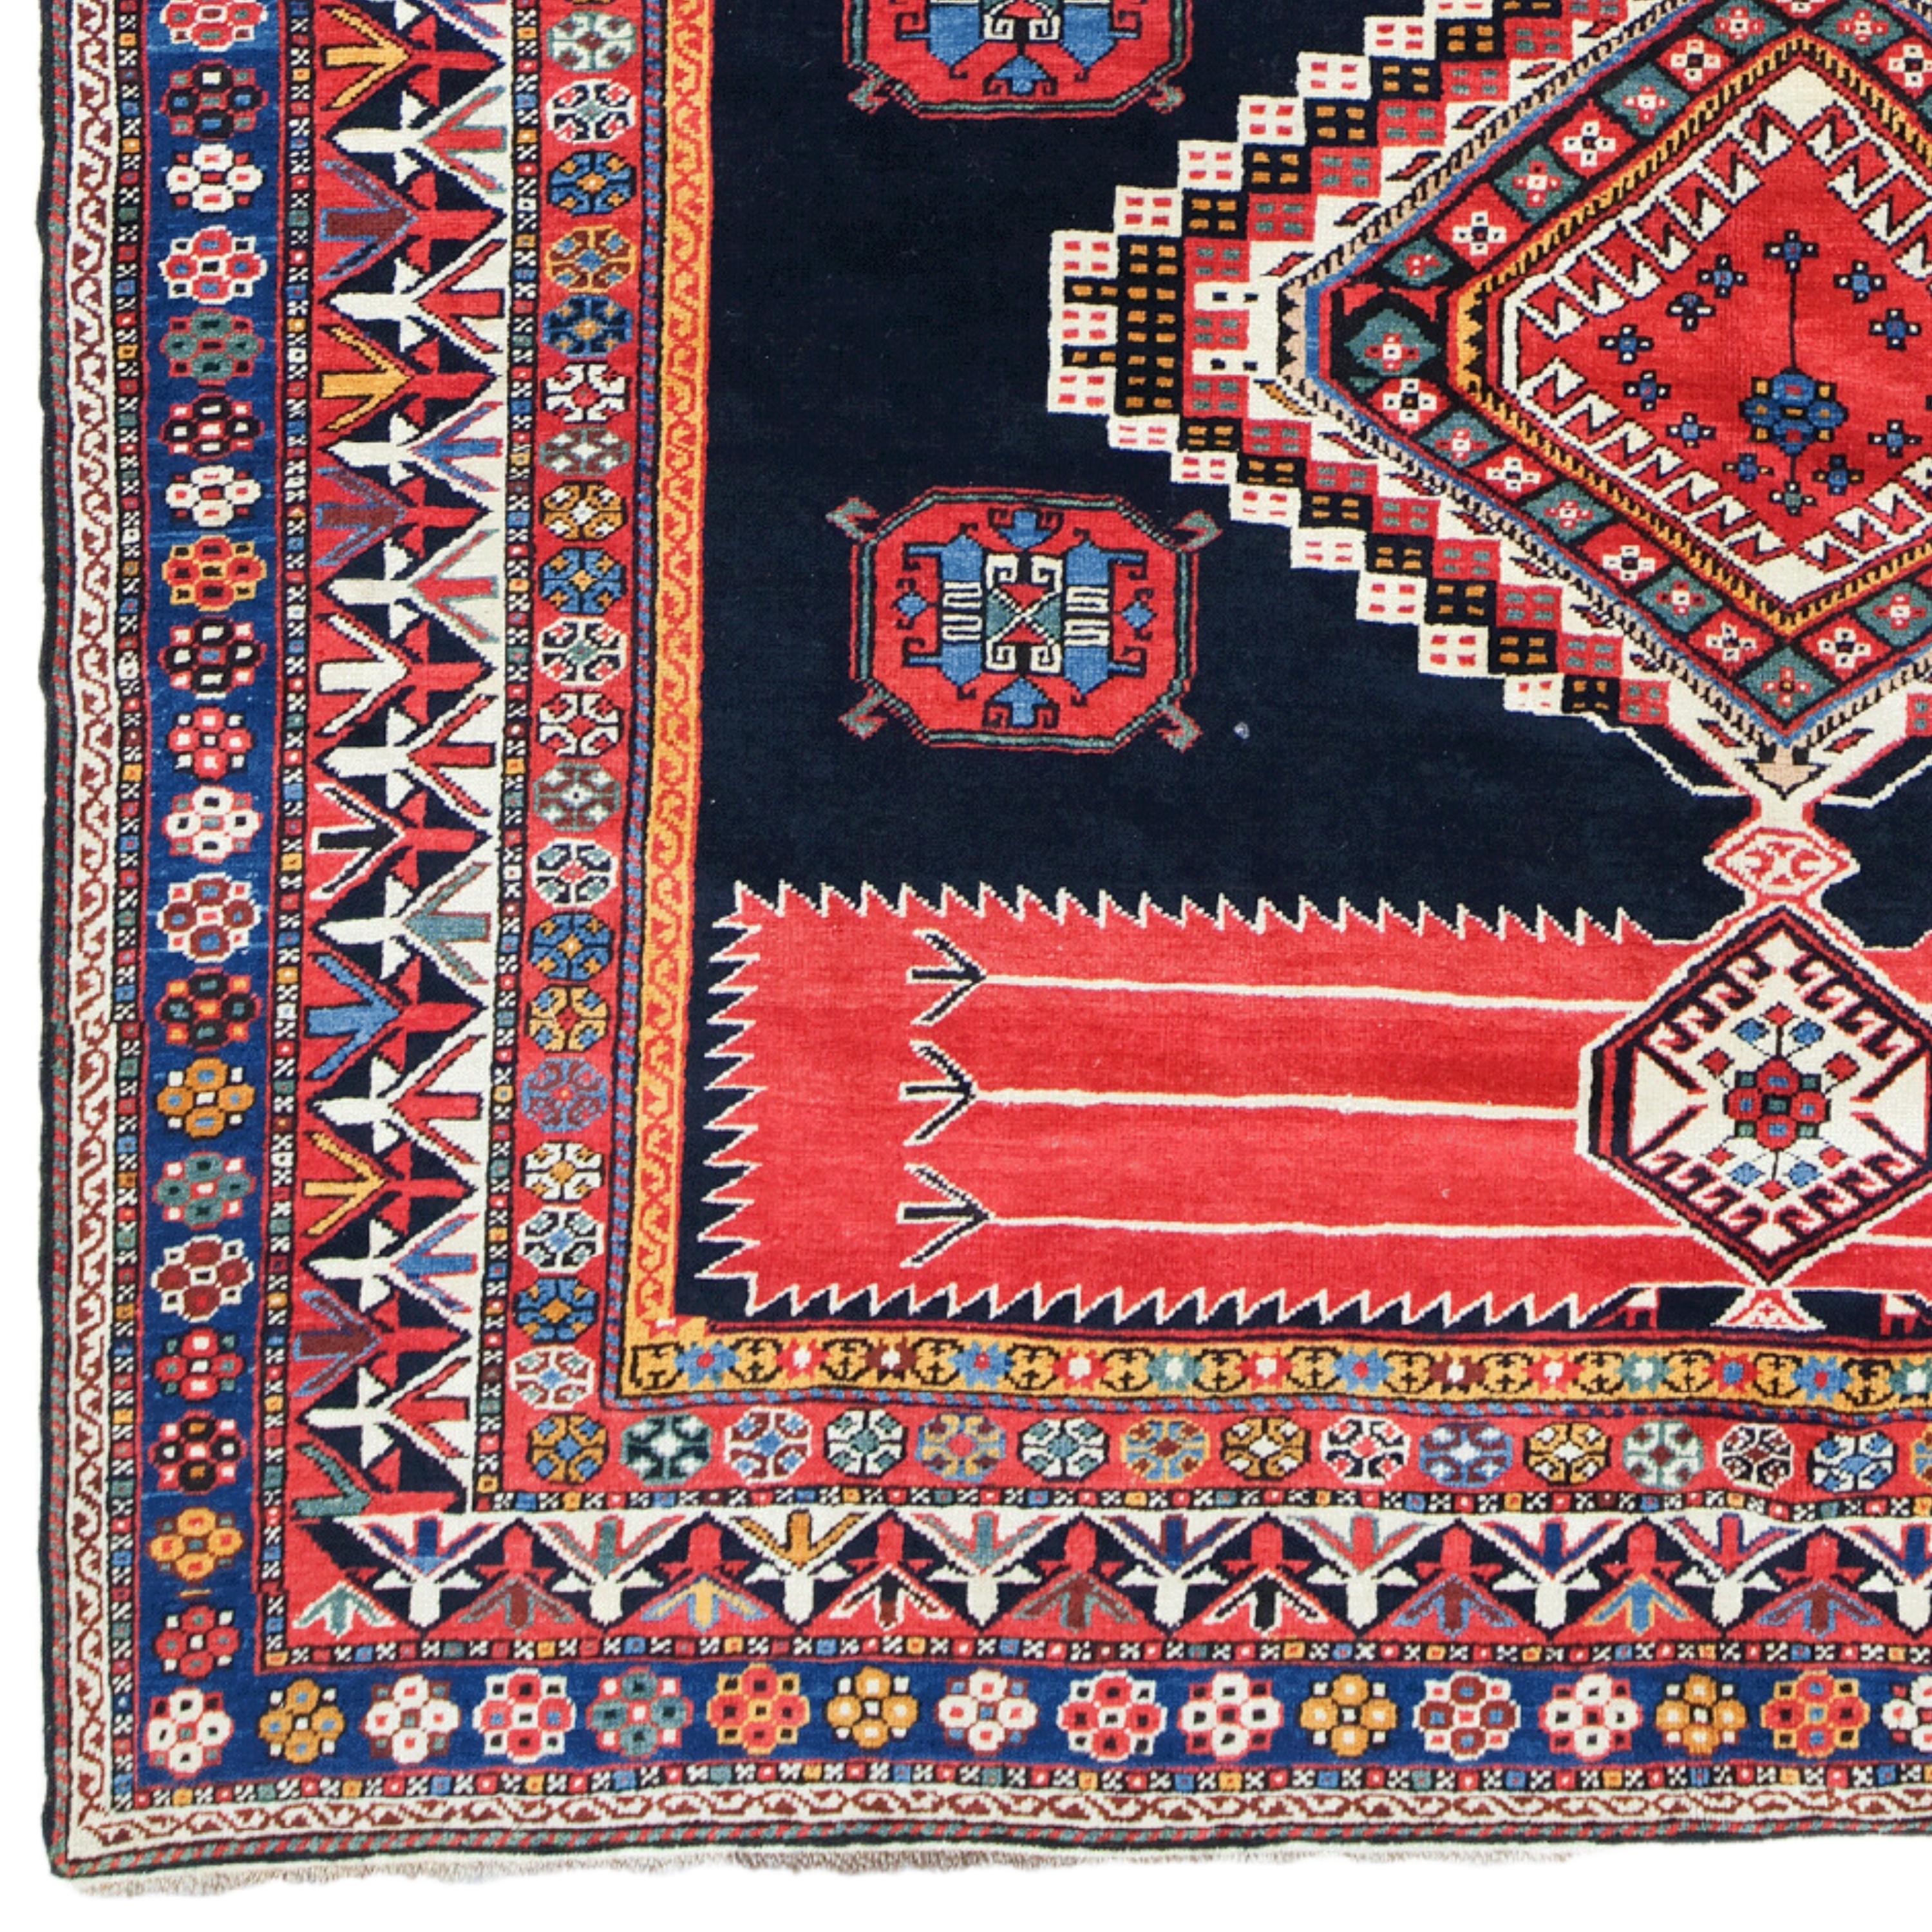 Tapis Shirvan du 19ème siècle - Tapis ancien tissé à la main

Cet élégant tapis Shirvan du 19e siècle ajoute de la noblesse à tout espace grâce à sa texture historique et à sa riche palette de couleurs. Cette œuvre, qui mesure 198x258 cm, est ornée